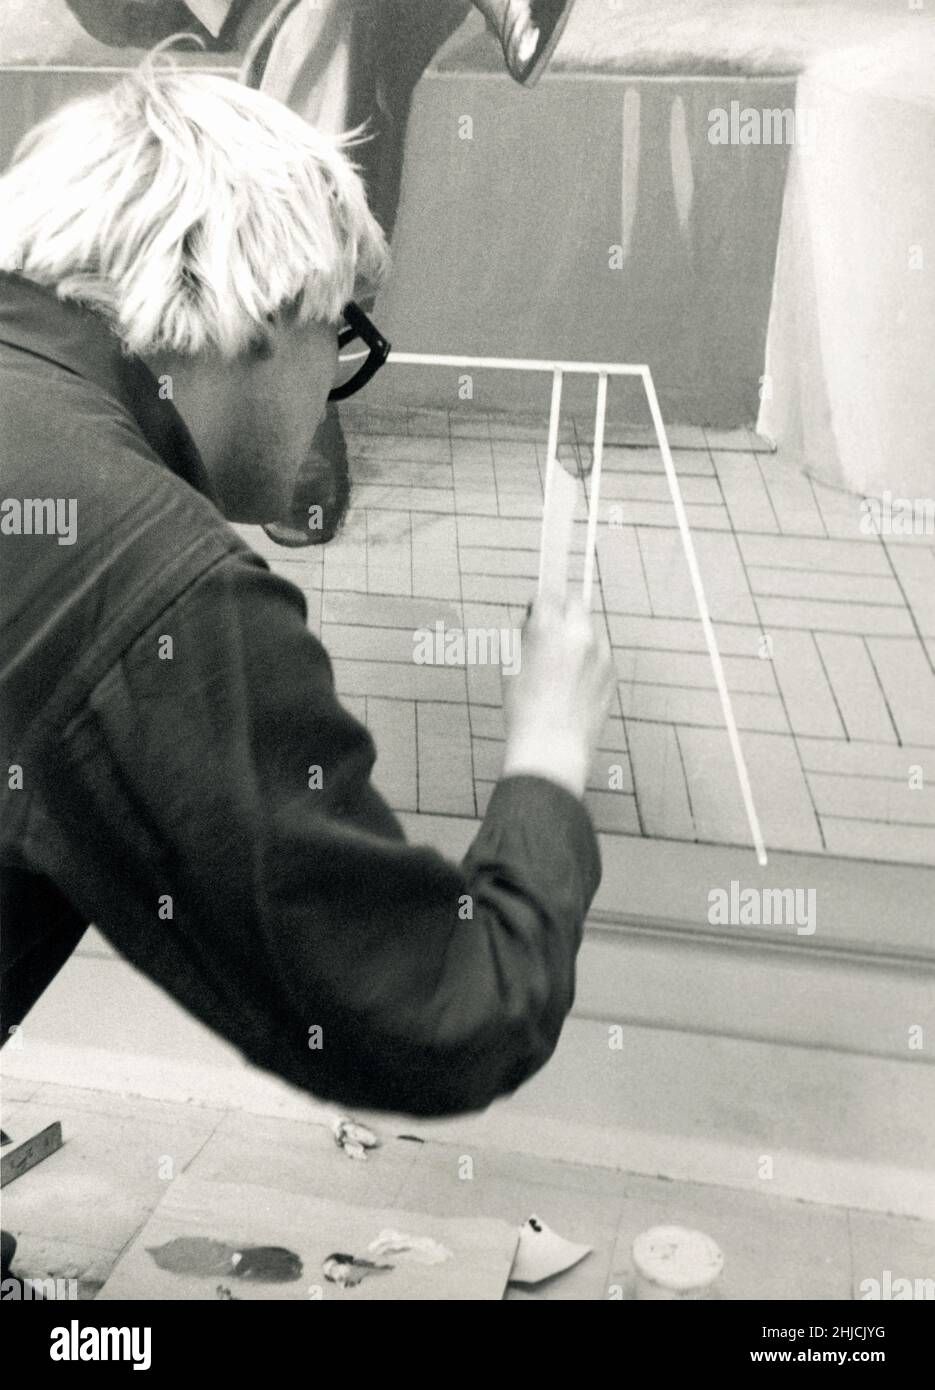 David Hockney arbeitet 1969 in seinem Heimstudio auf Powis Terrace in London. Hier macht er sein 'Henry Geldzahler'-Gemälde. Hockney war ein wichtiger Beitrag zur britischen Pop-Art-Bewegung der 1960er Jahre und lebt heute in Los Angeles, Kalifornien. Stockfoto